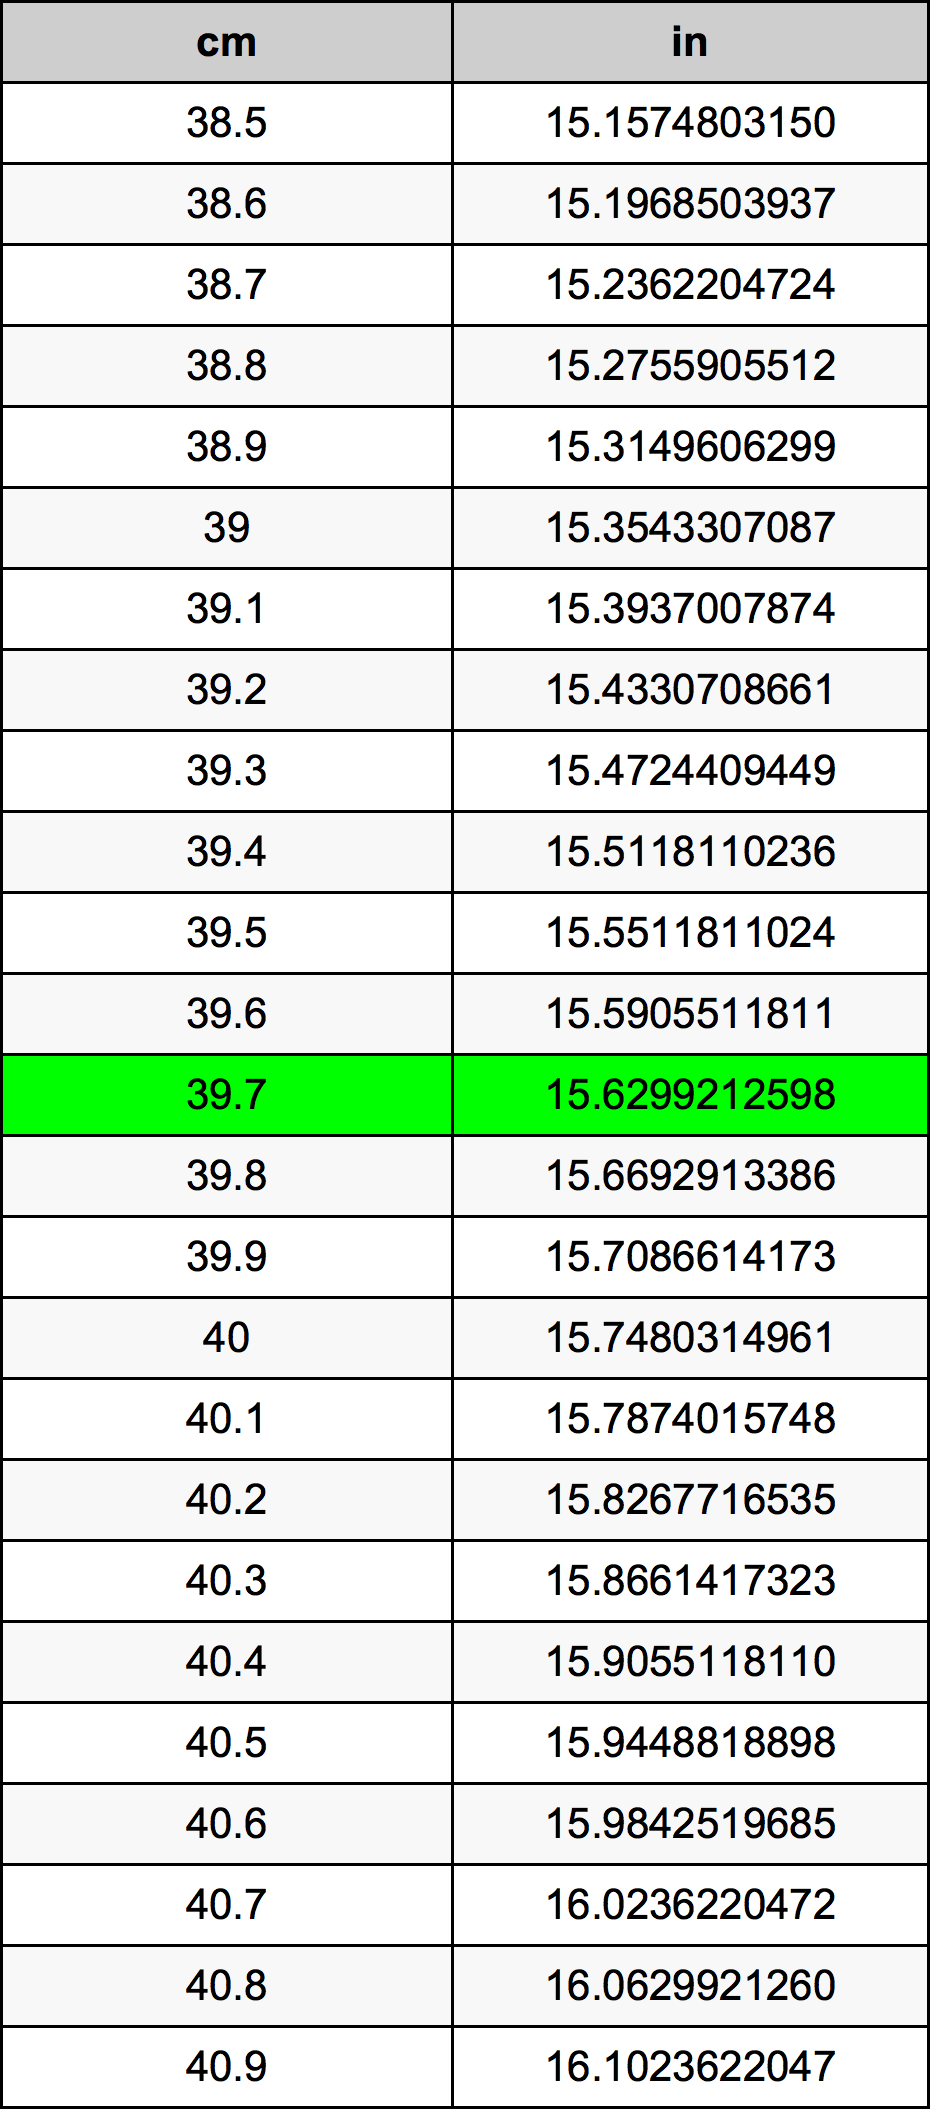 39.7 Centiméter átszámítási táblázat